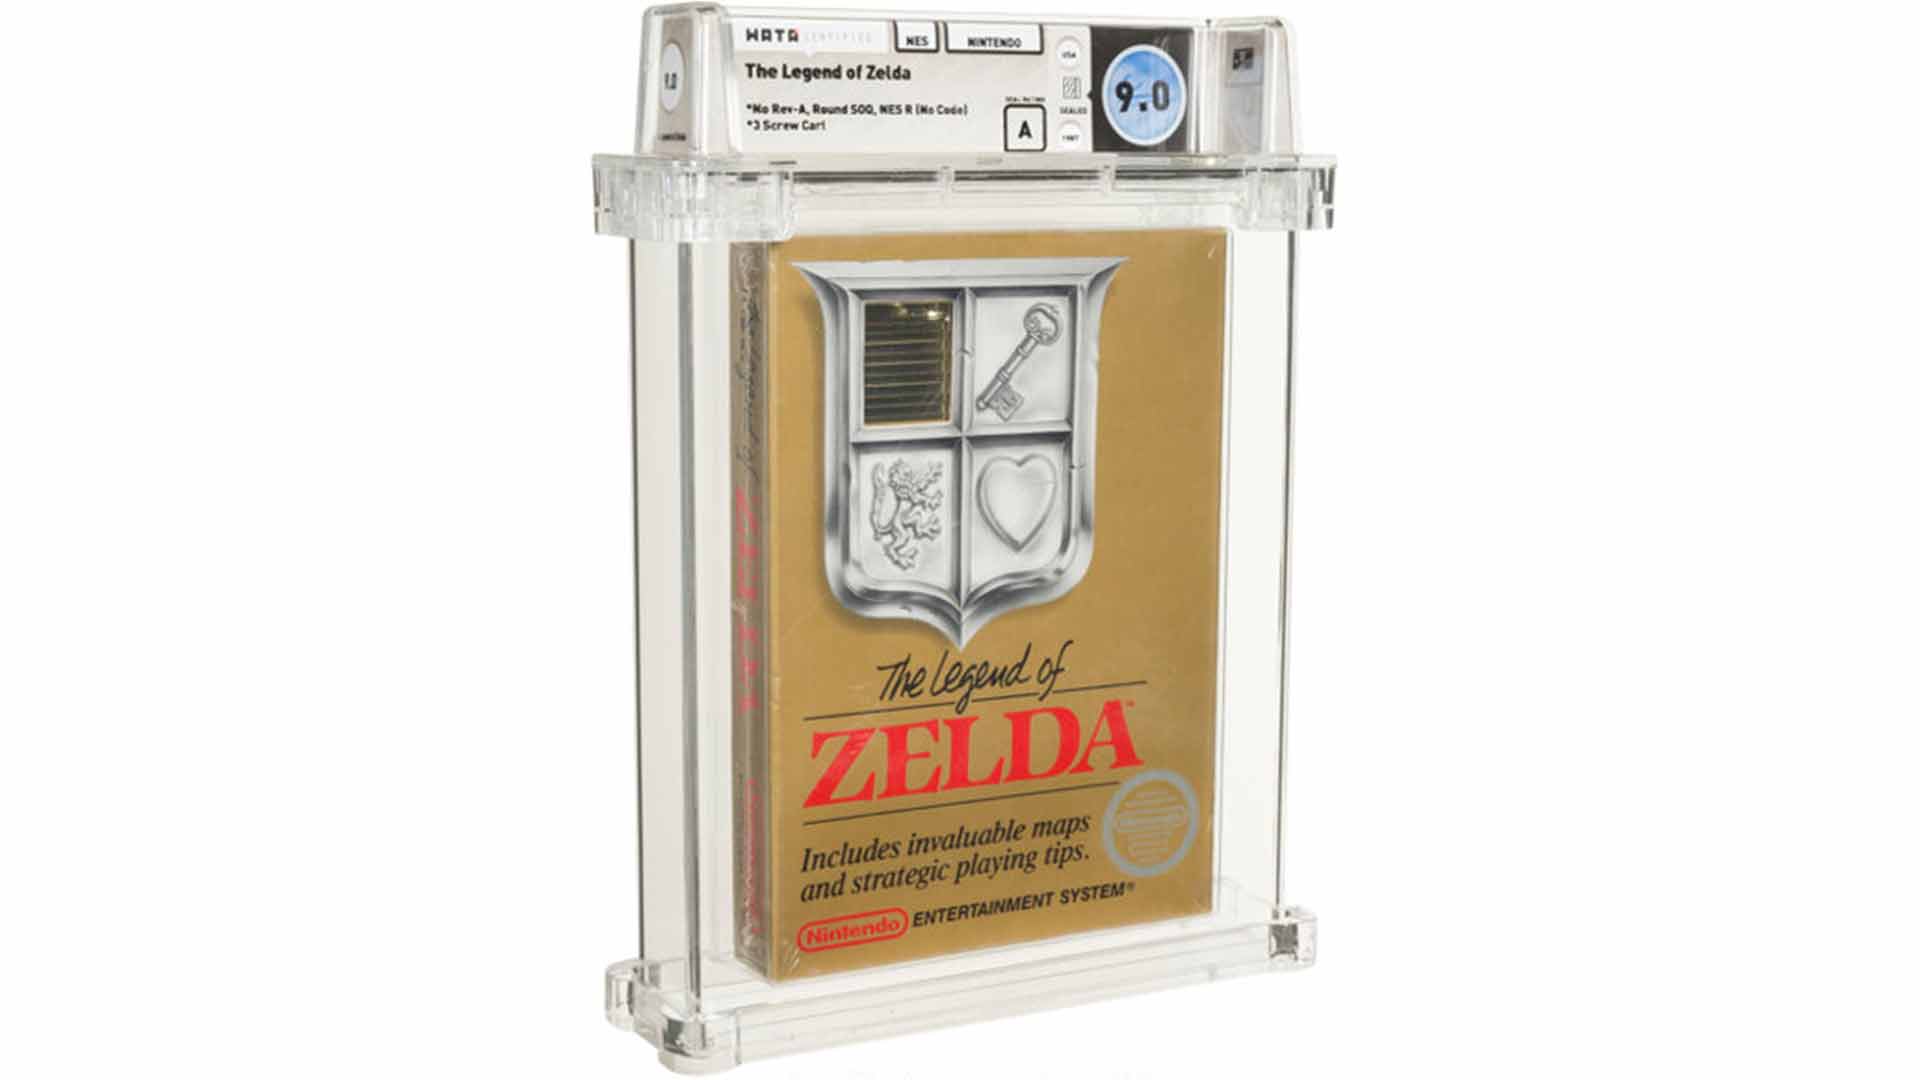 The Legend of Zelda 9.0